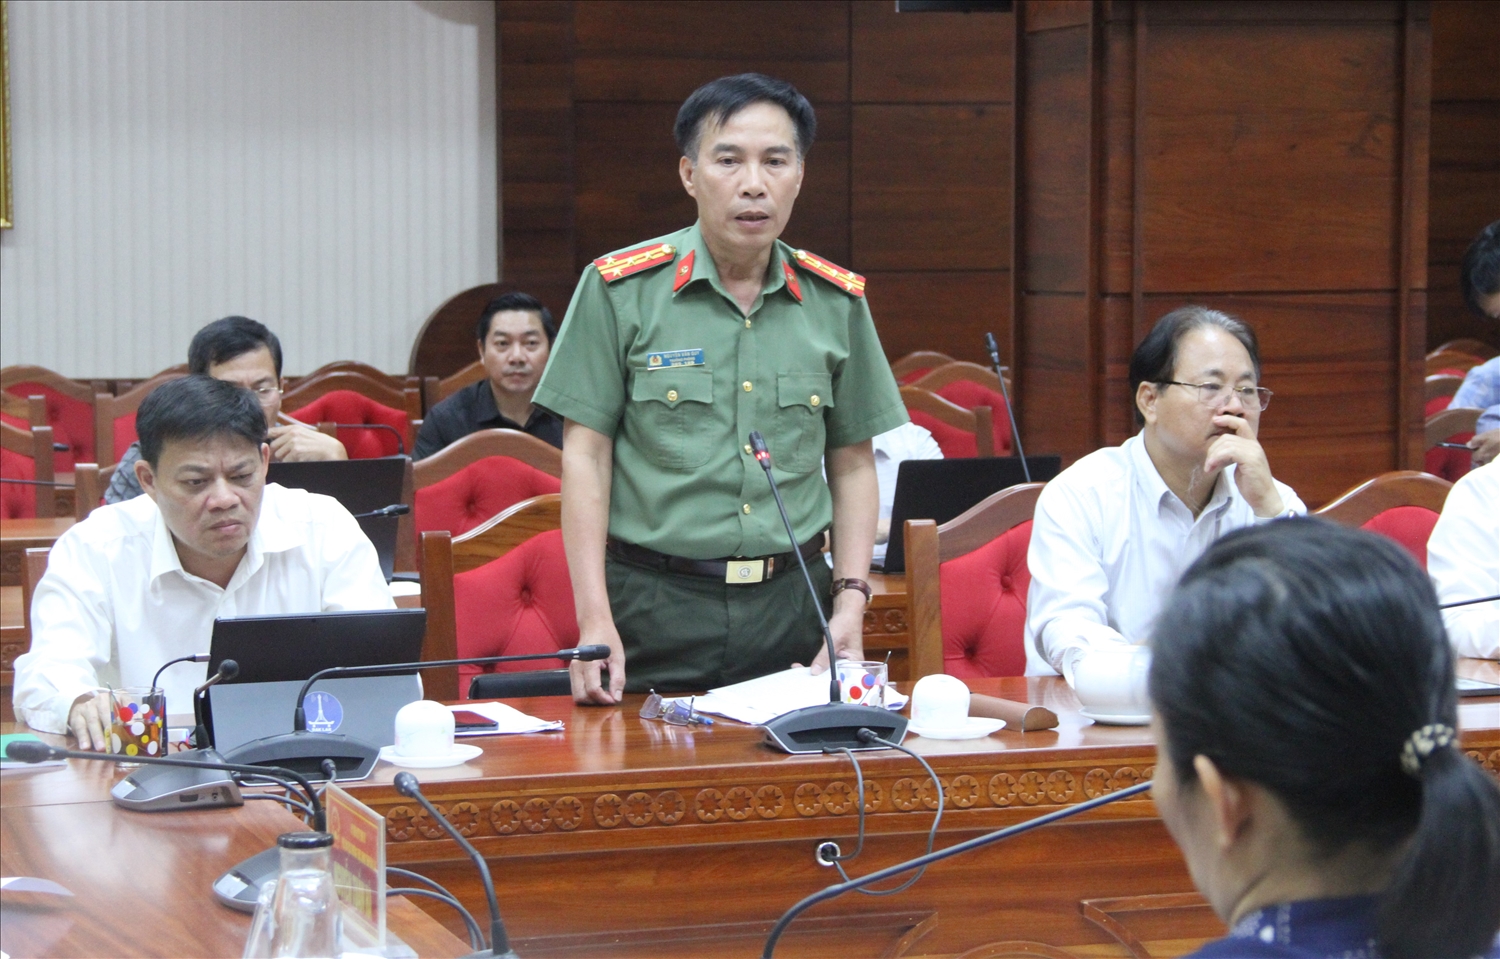 Đại tá Nguyễn Văn Quy, Trưởng phòng tham mưu, Công an tỉnh Đắk Lắk thông tin tại buổi họp báo